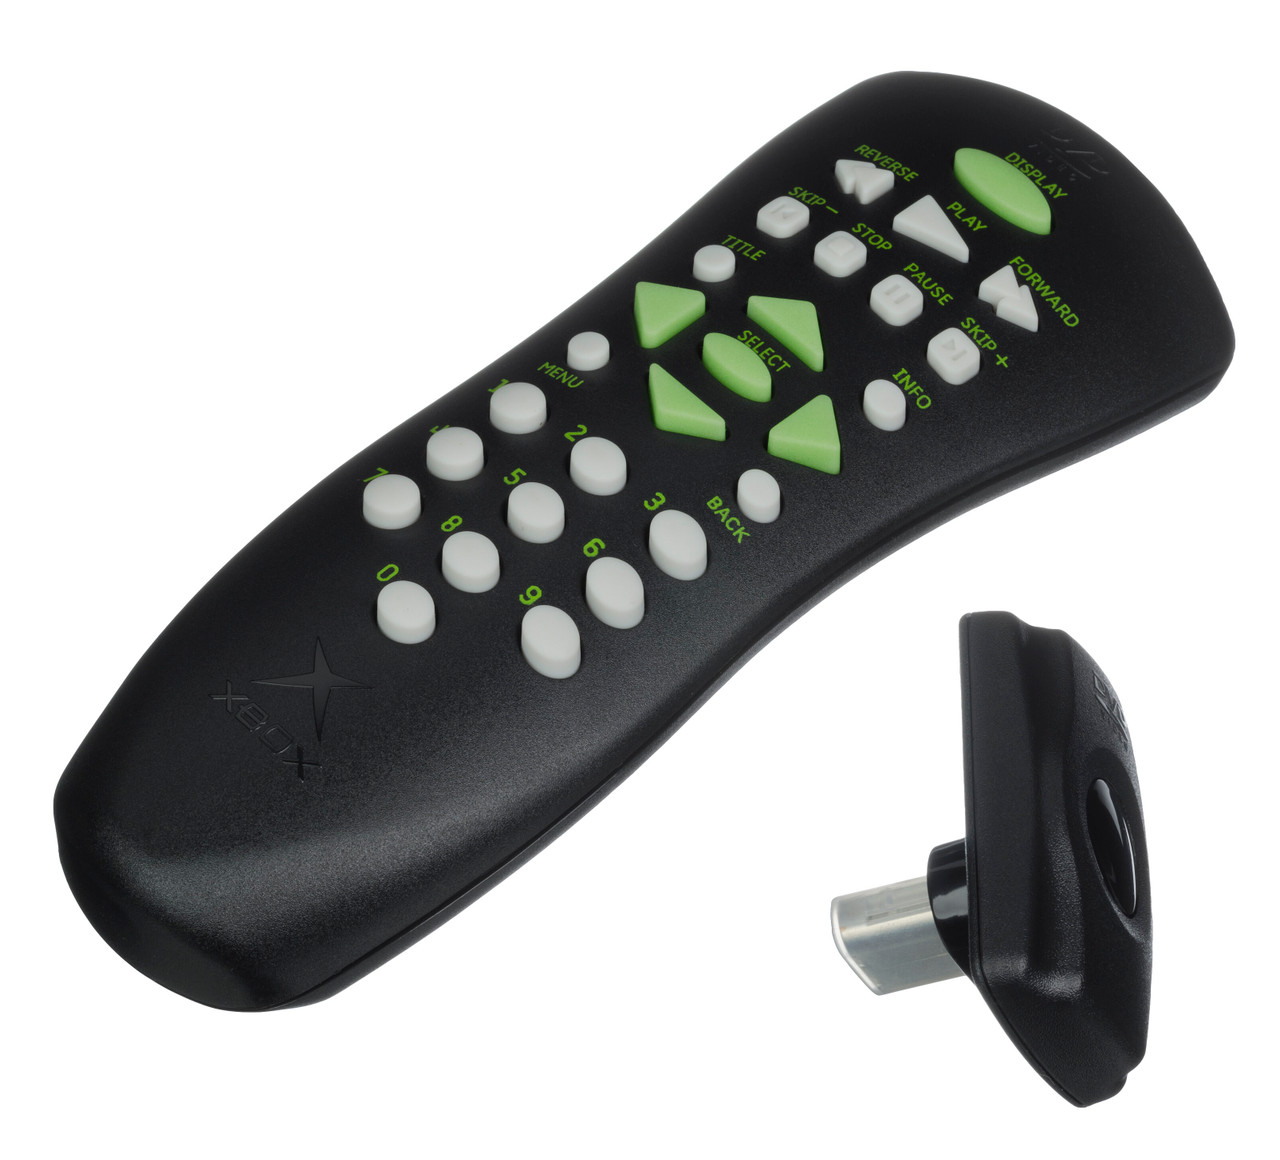 Xbox dvd remote control